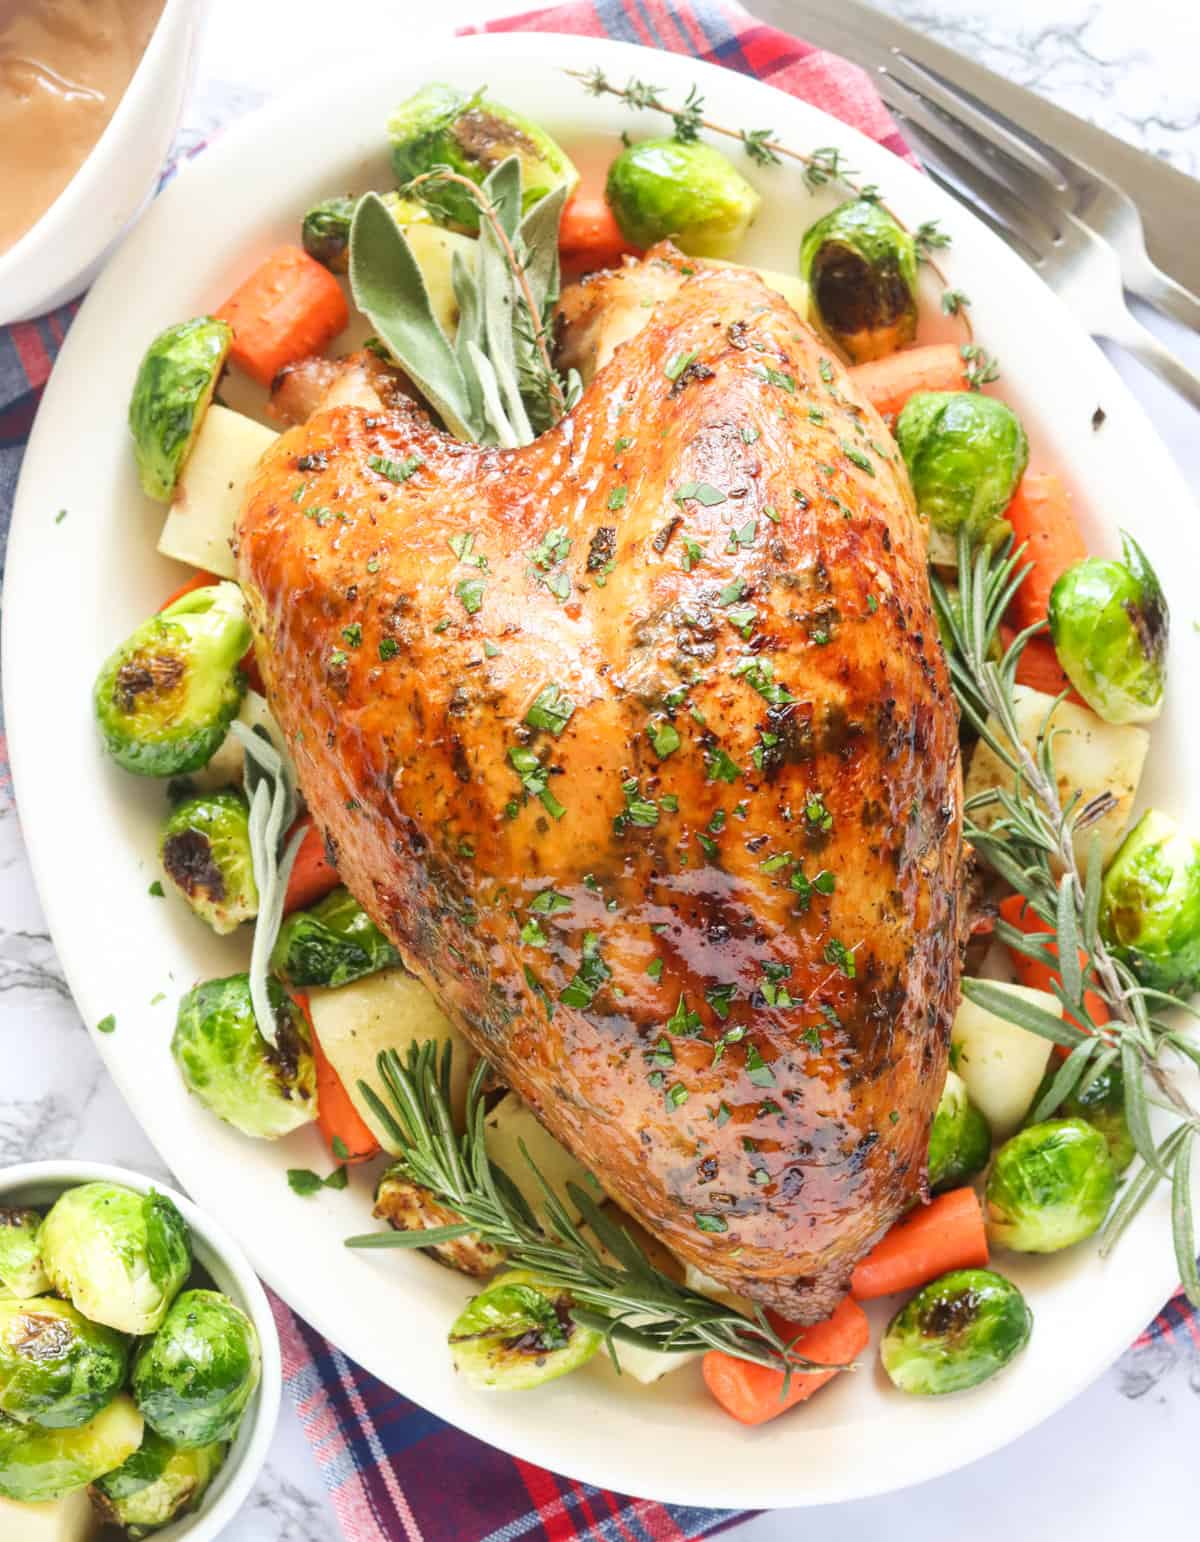 Roast Turkey Crown, tender, juicy turkey breast bursts with flavor